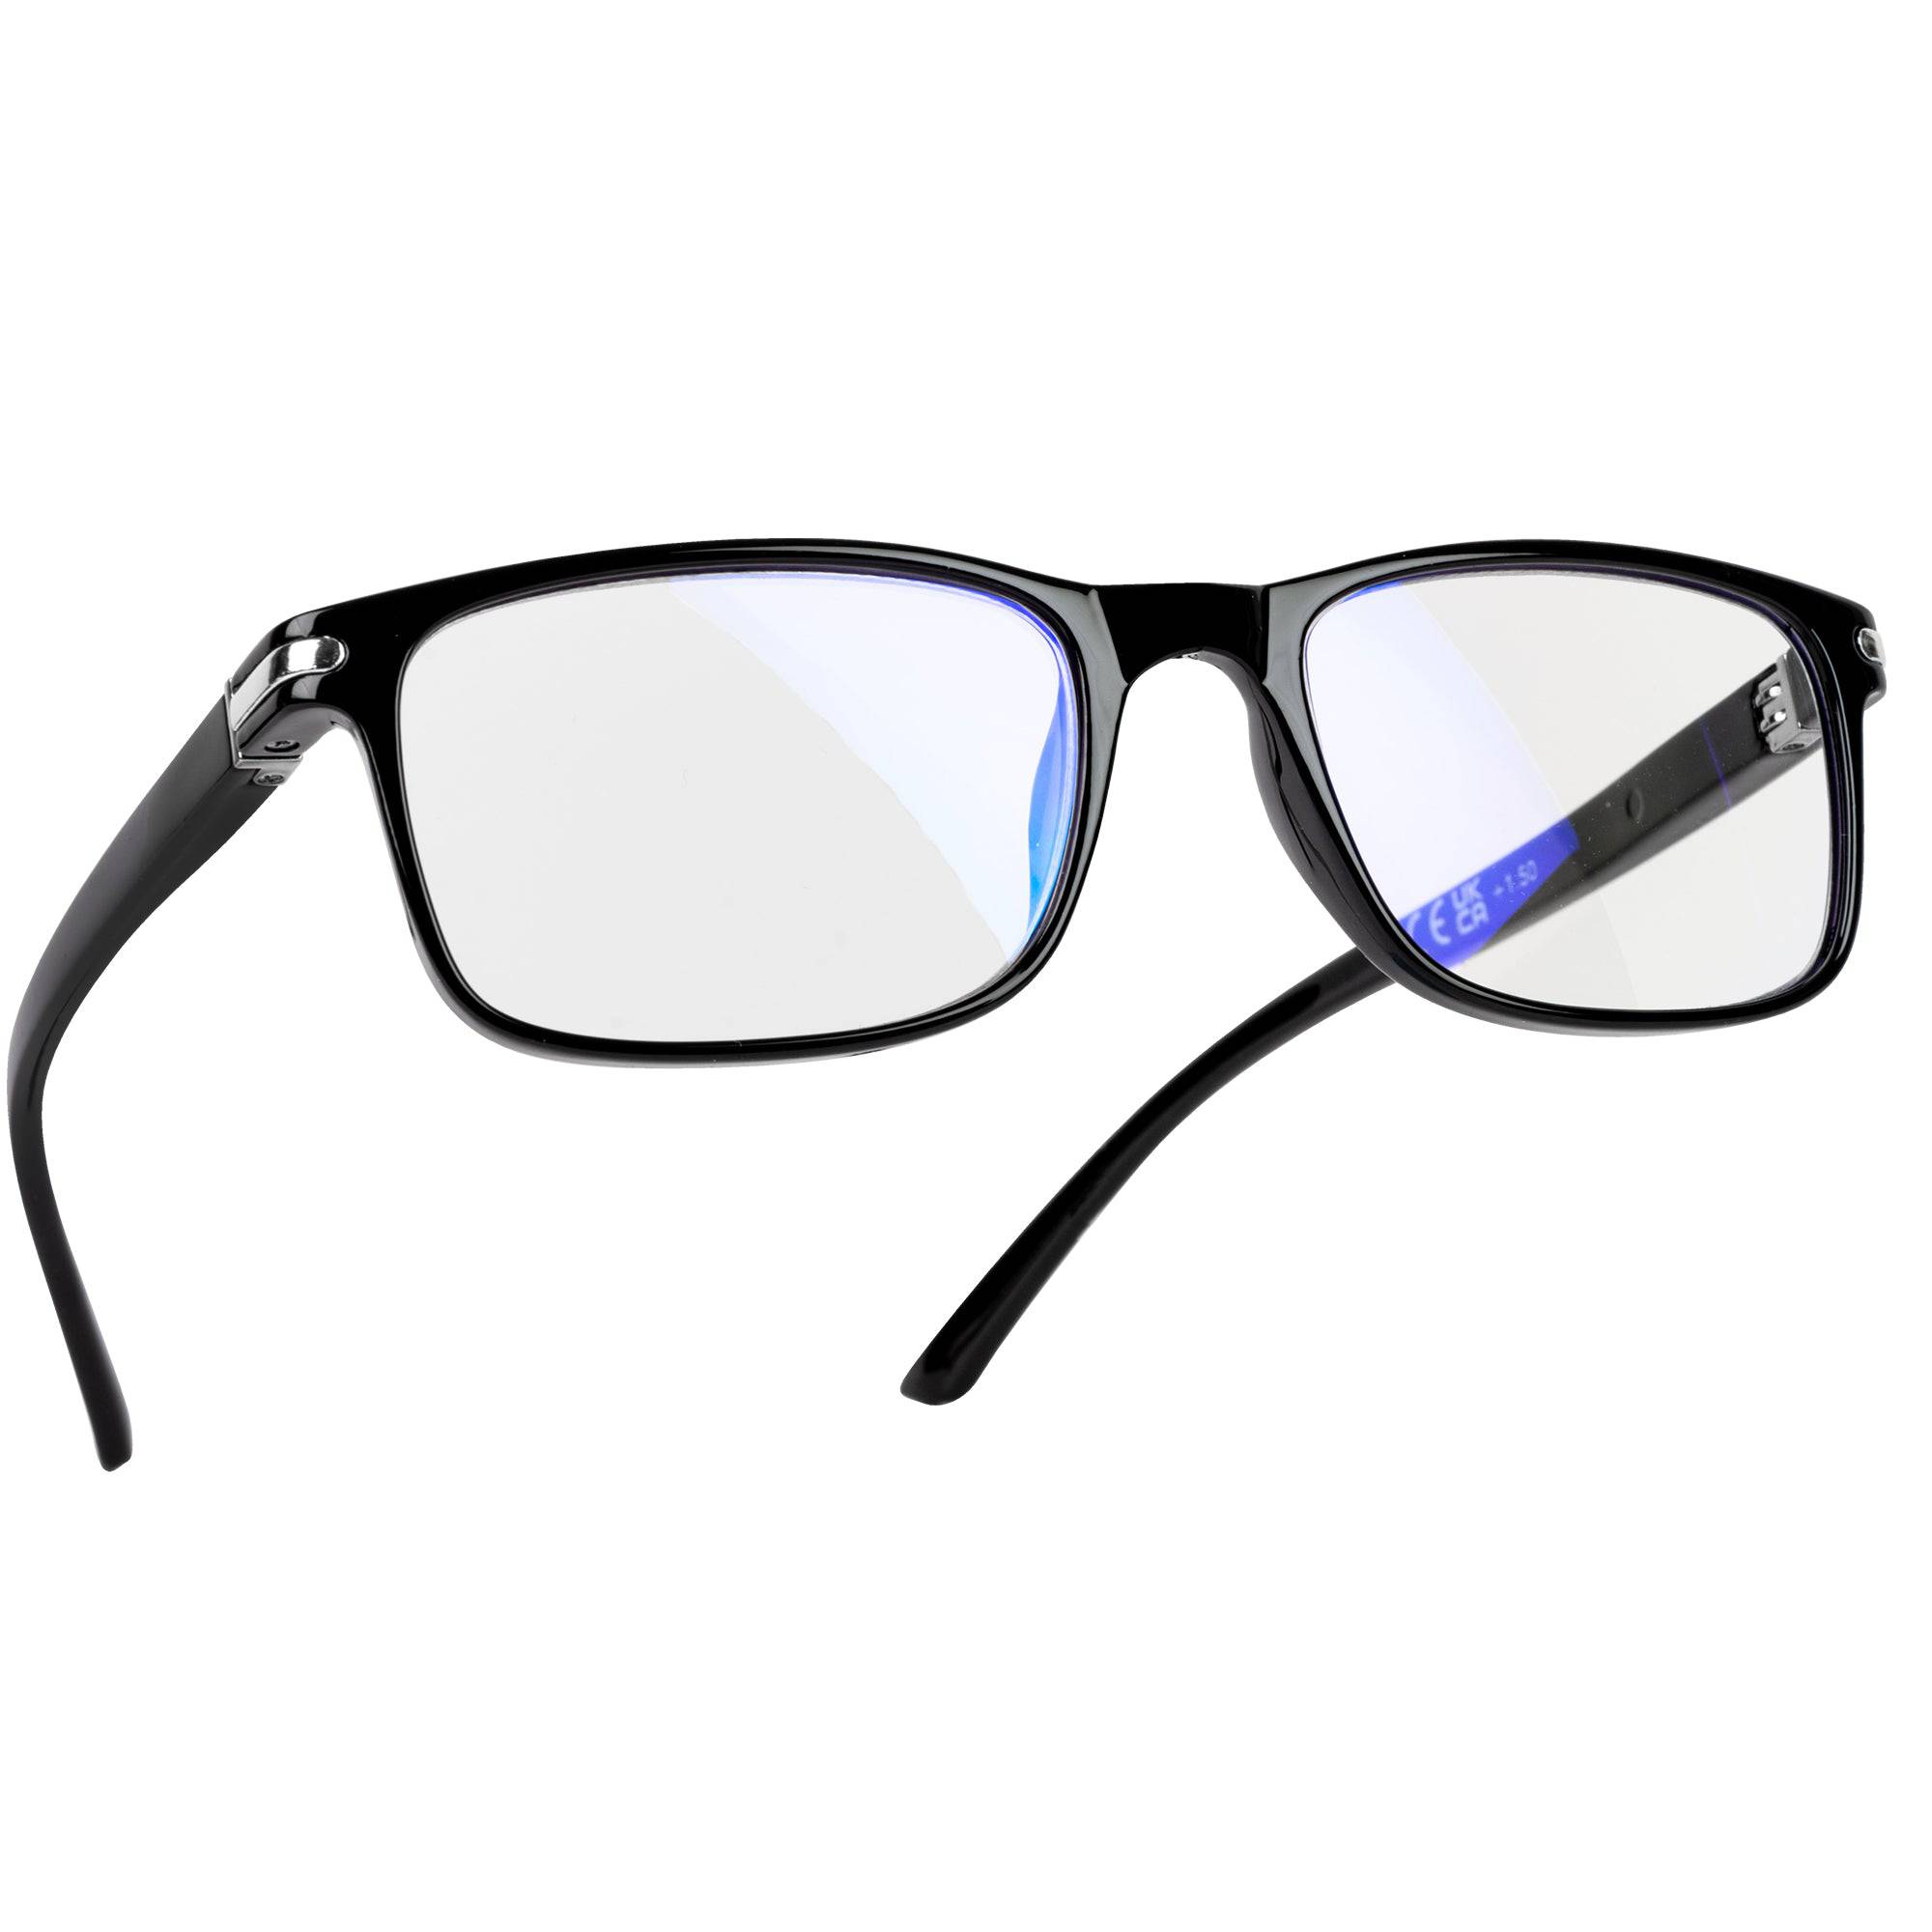 Reading Glasses 1.5 (Rectangular Frame) - iN Vision - DSL